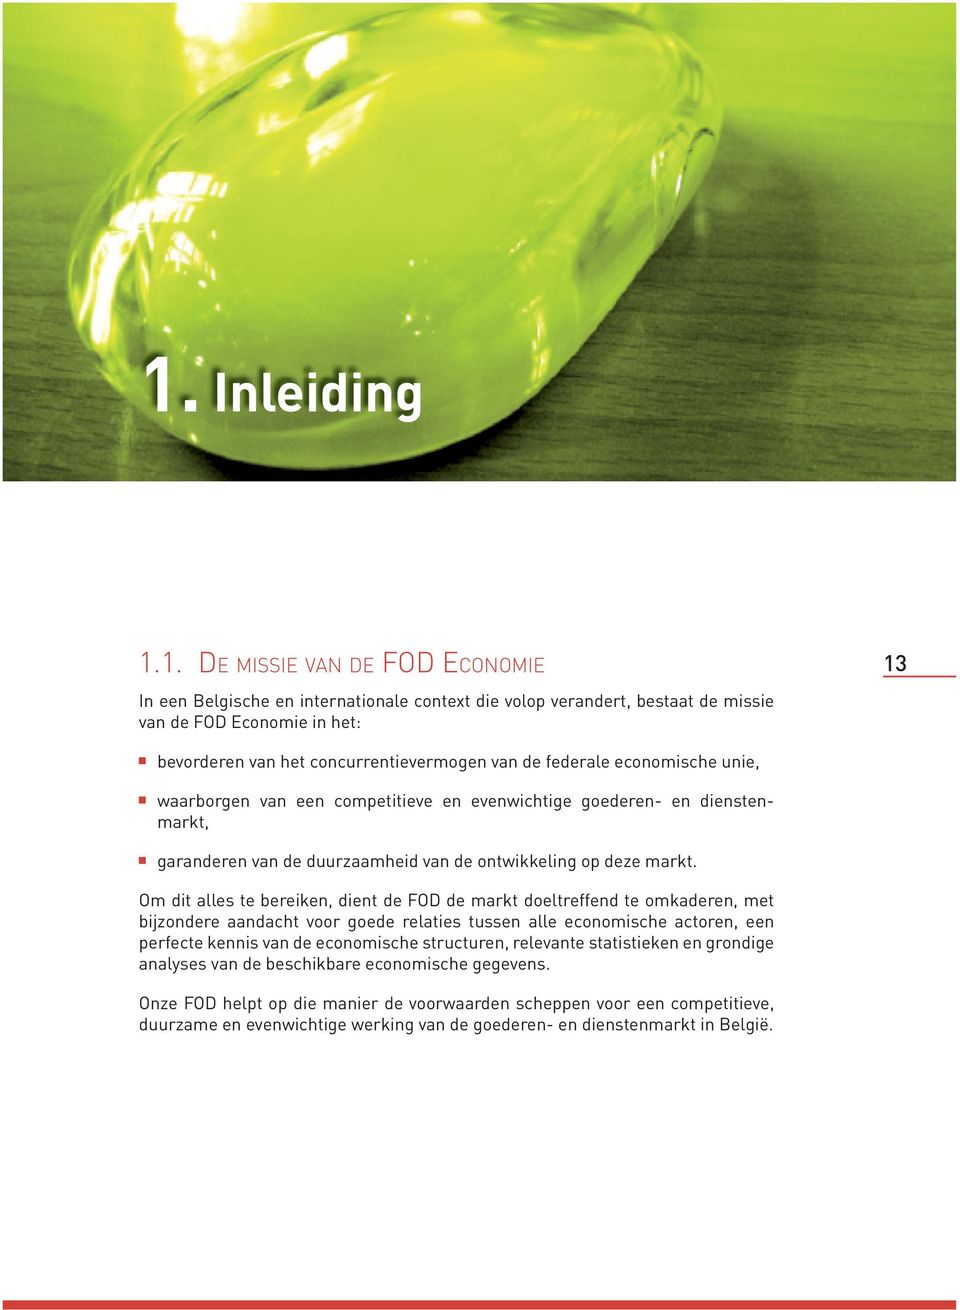 1. DE MISSIE VAN DE FOD ECONOMIE In een Belgische en internationale context die volop verandert, bestaat de missie van de FOD Economie in het: 13 bevorderen van het concurrentievermogen van de